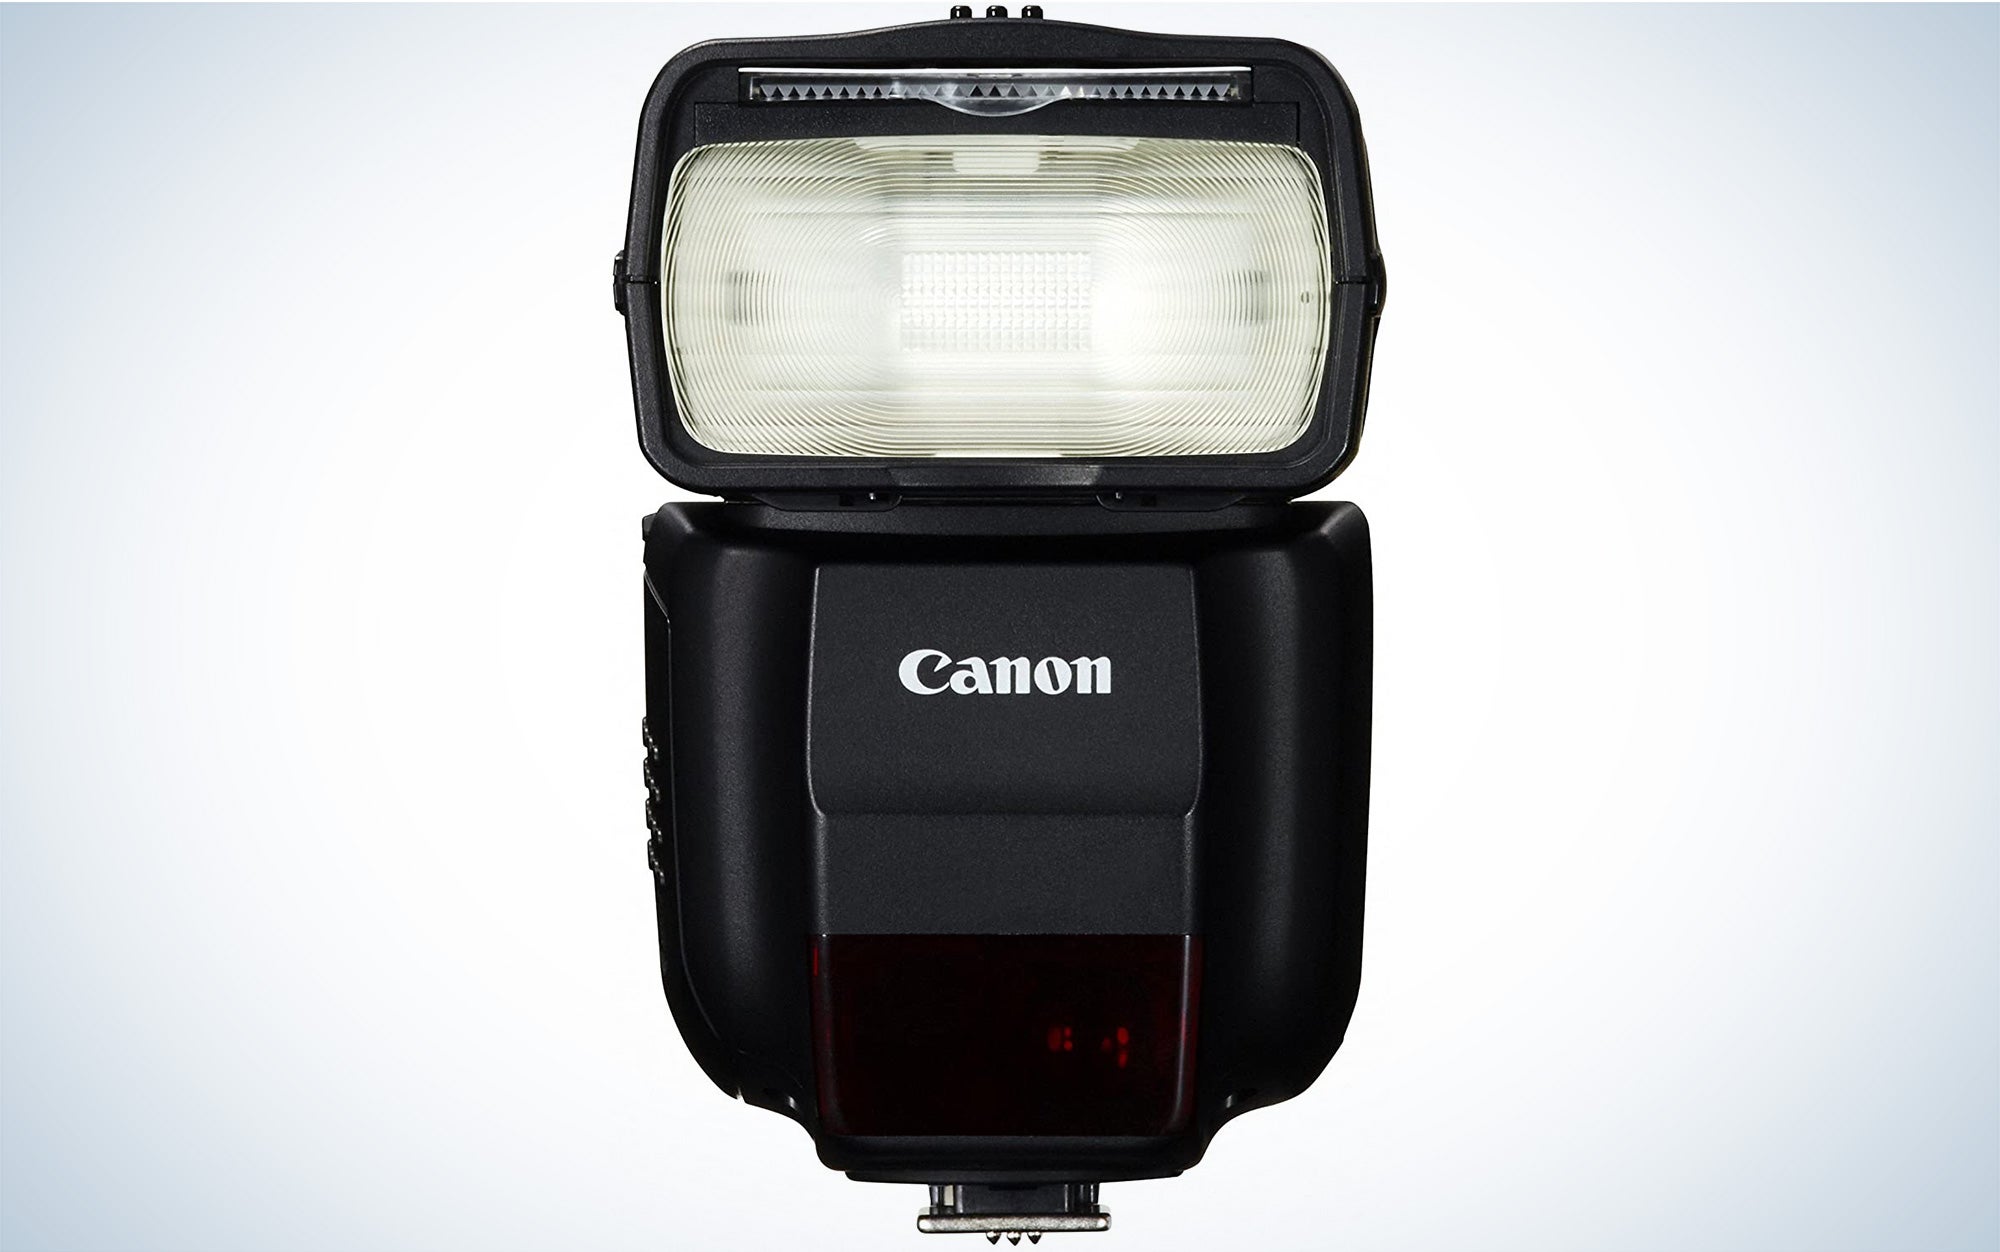 Canon Speedlite 430EX III-RT detachable camera Flash